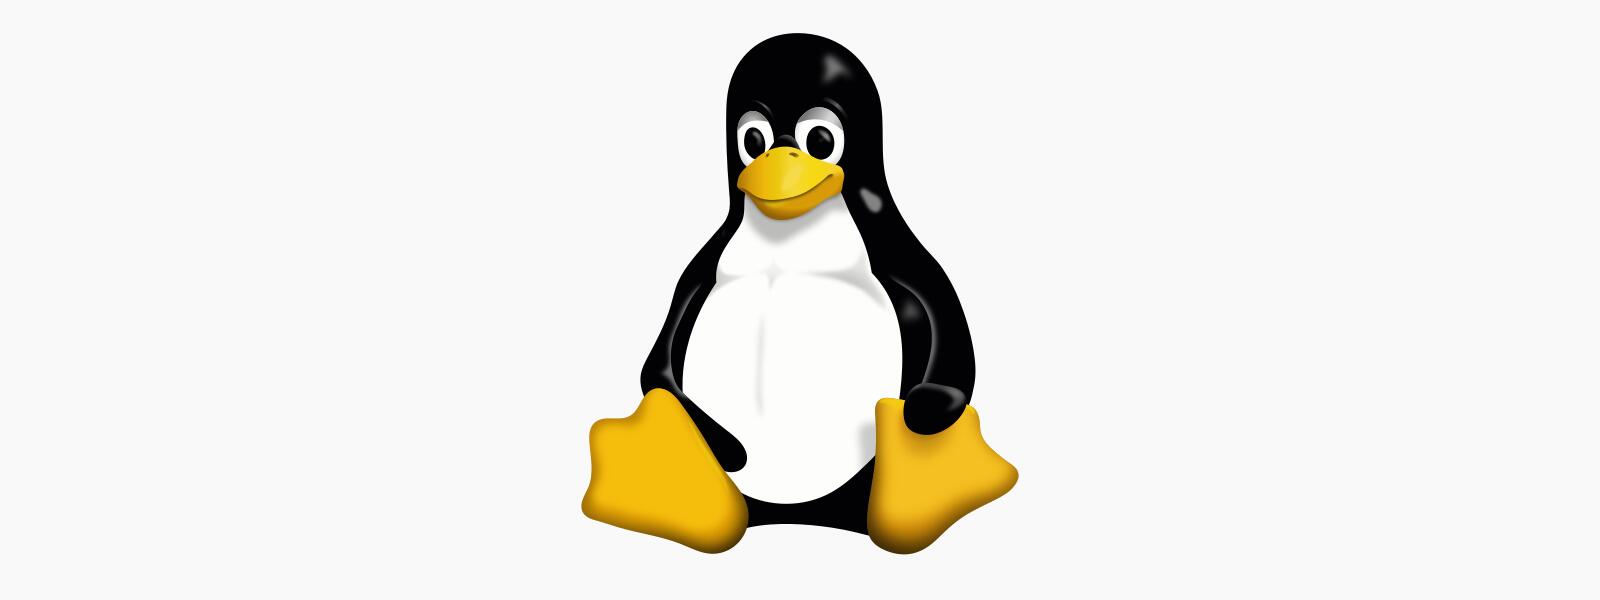 Linux 5.10, dous anos de soporte se non consigue apoio empresarial